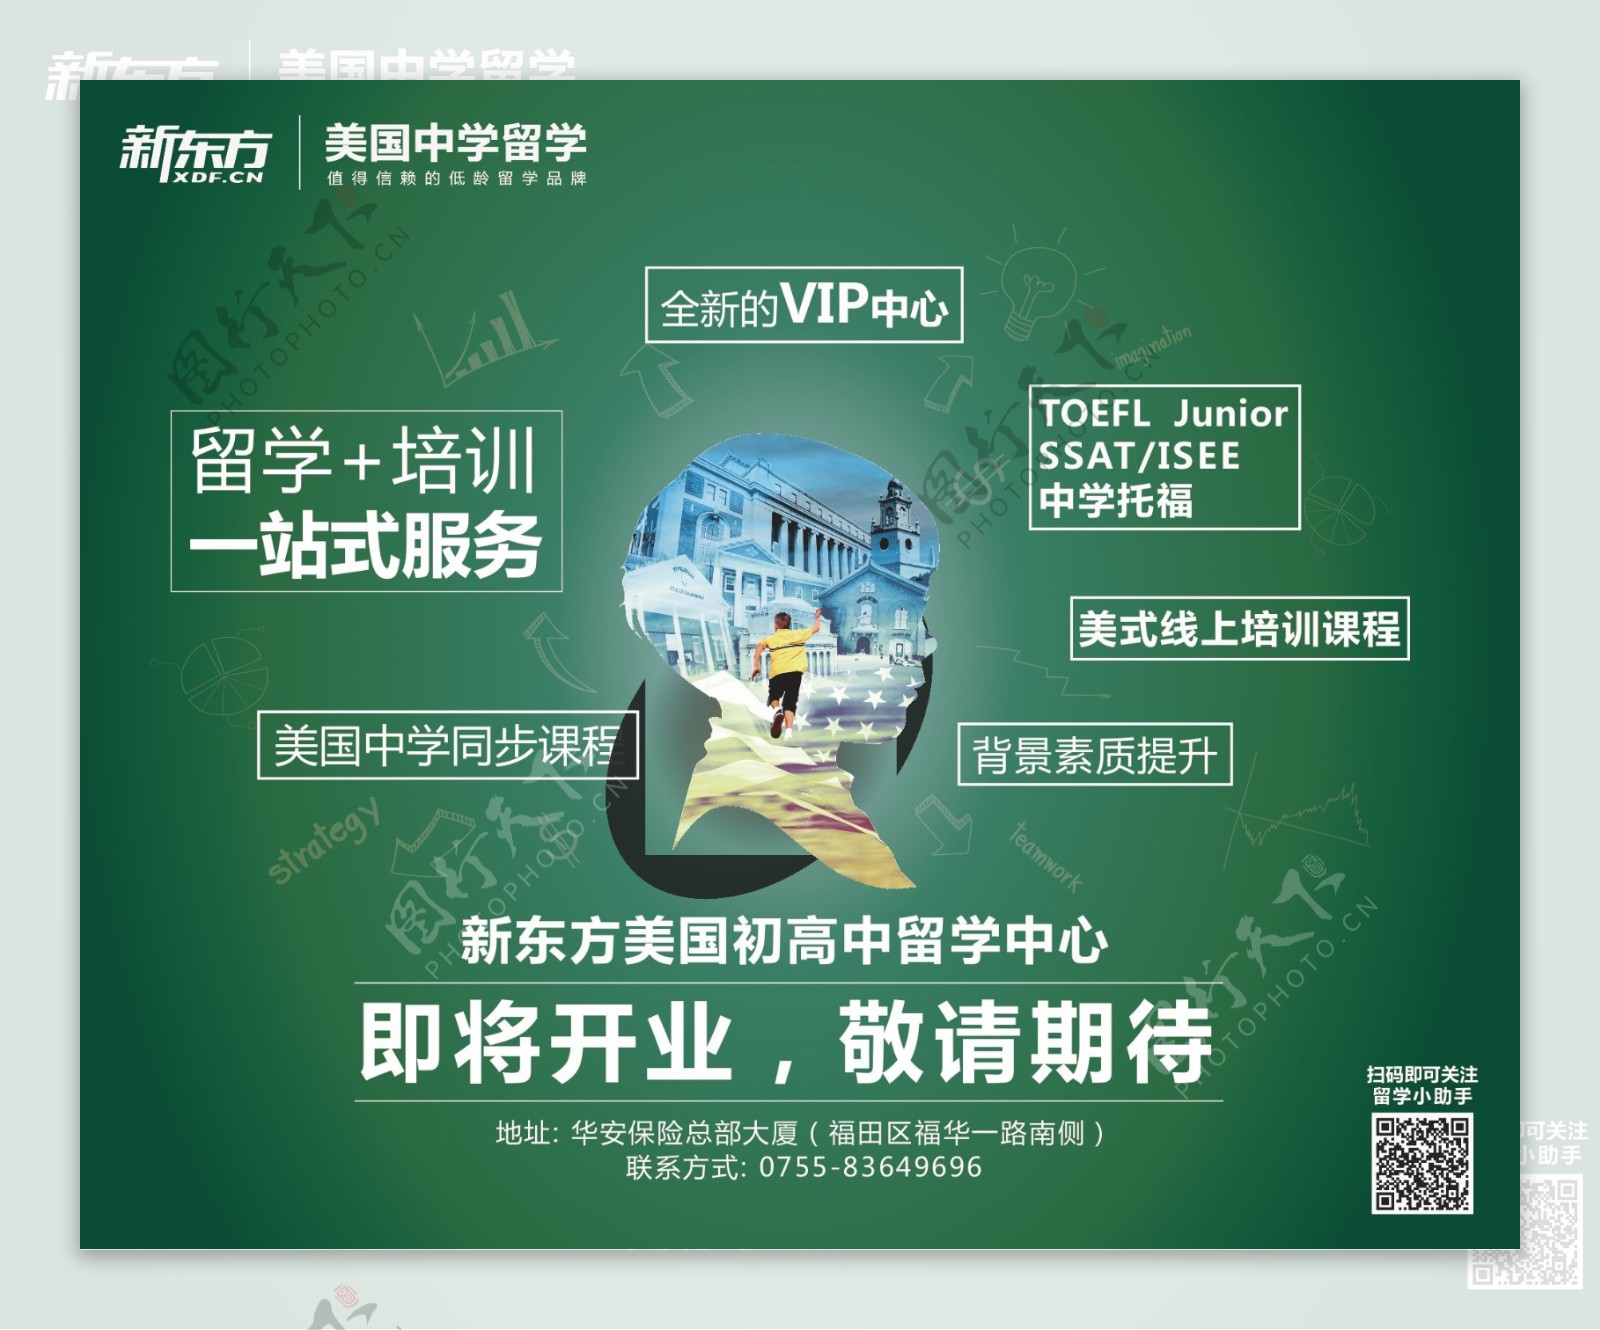 新东方深圳美国初高中留学中心即将开业广告